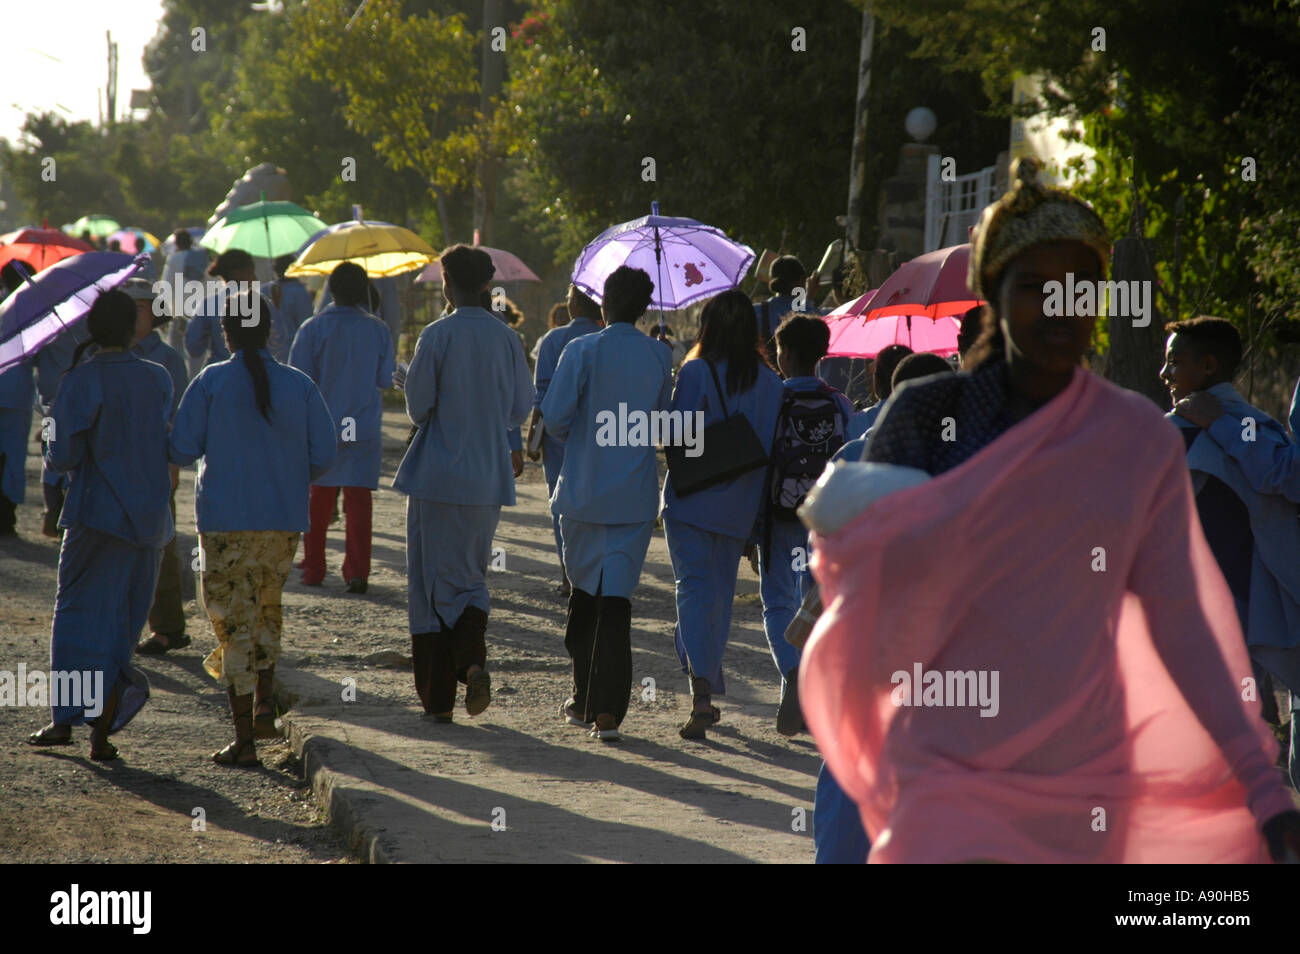 Junge Frauen gekleidet in blau mit leuchtenden farbigen Sonnenschirmen Aksum Äthiopien Stockfoto